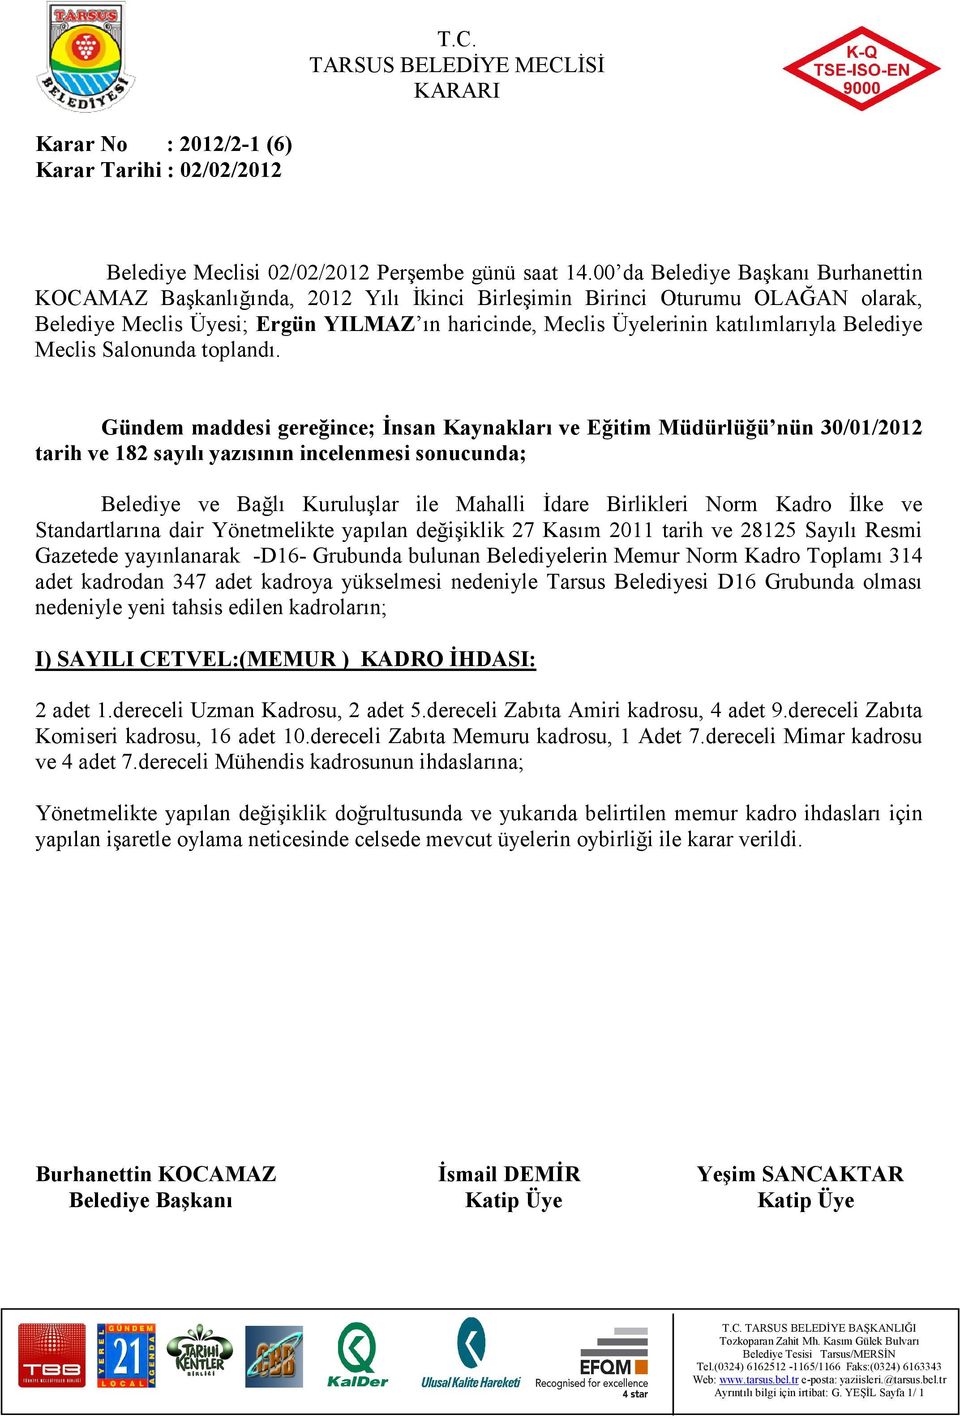 Birlikleri Norm Kadro Đlke ve Standartlarına dair Yönetmelikte yapılan değişiklik 27 Kasım 2011 tarih ve 28125 Sayılı Resmi Gazetede yayınlanarak -D16- Grubunda bulunan Belediyelerin Memur Norm Kadro